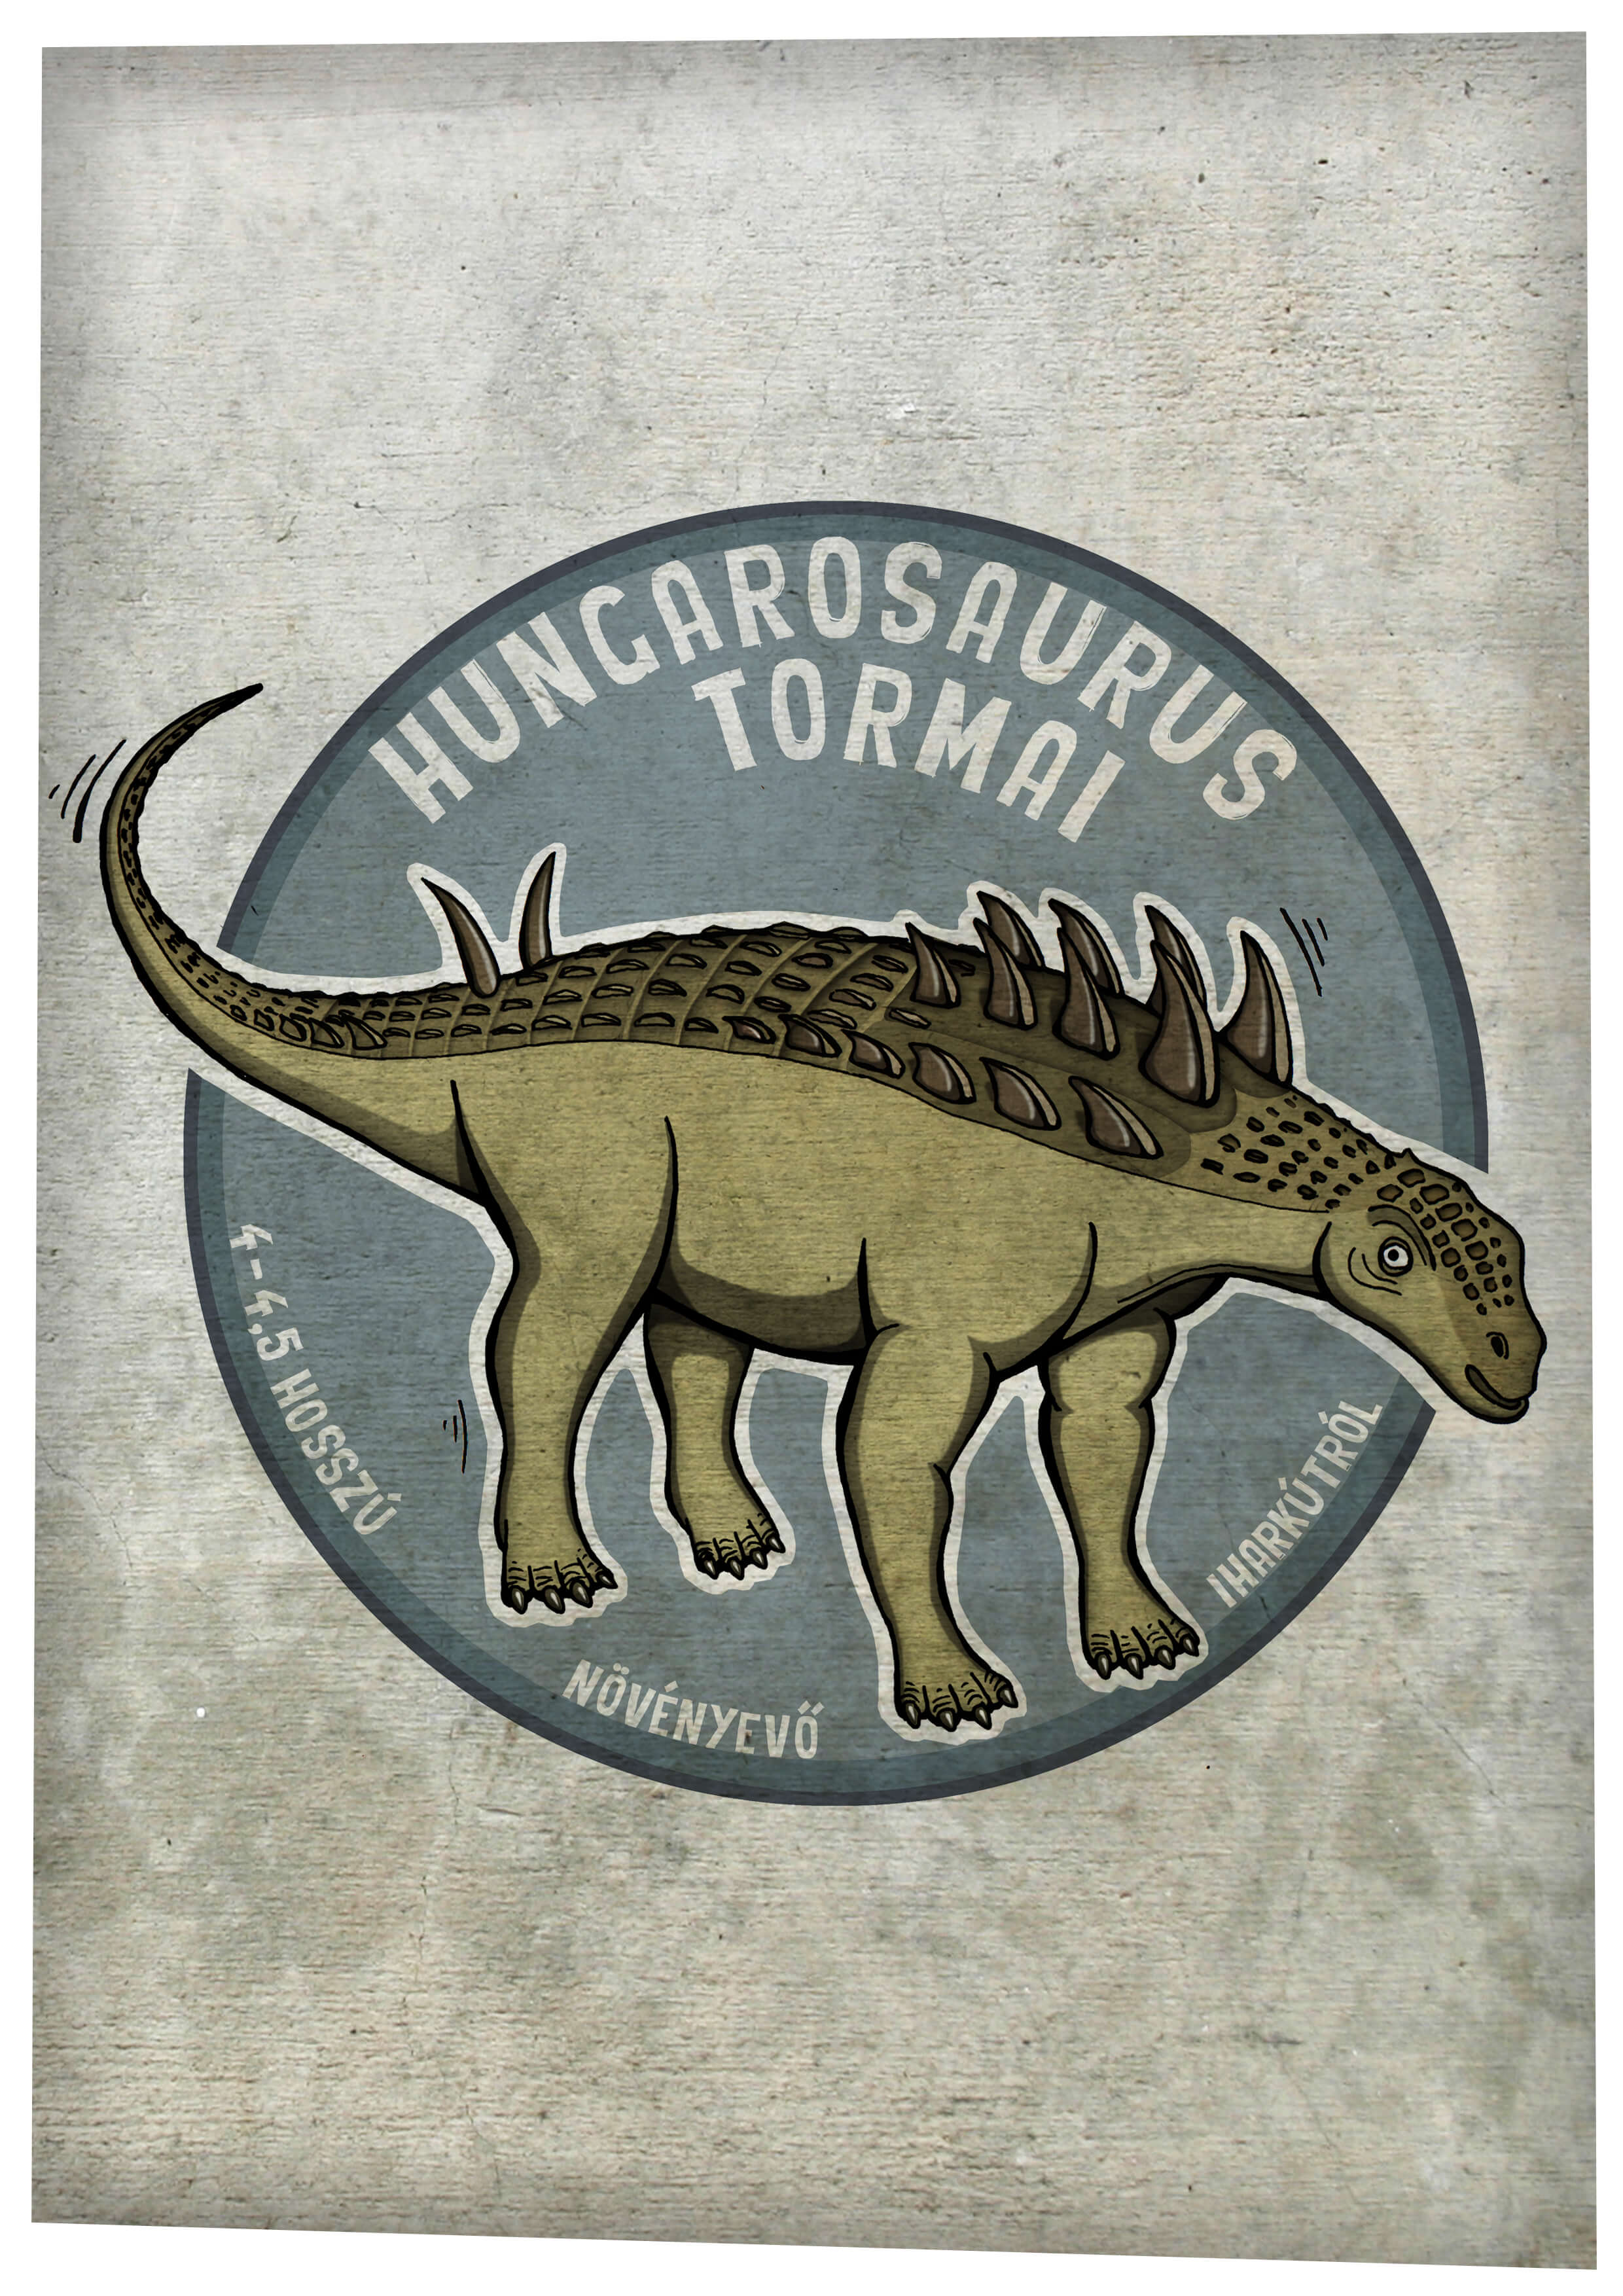 Hungarosaurus tormai